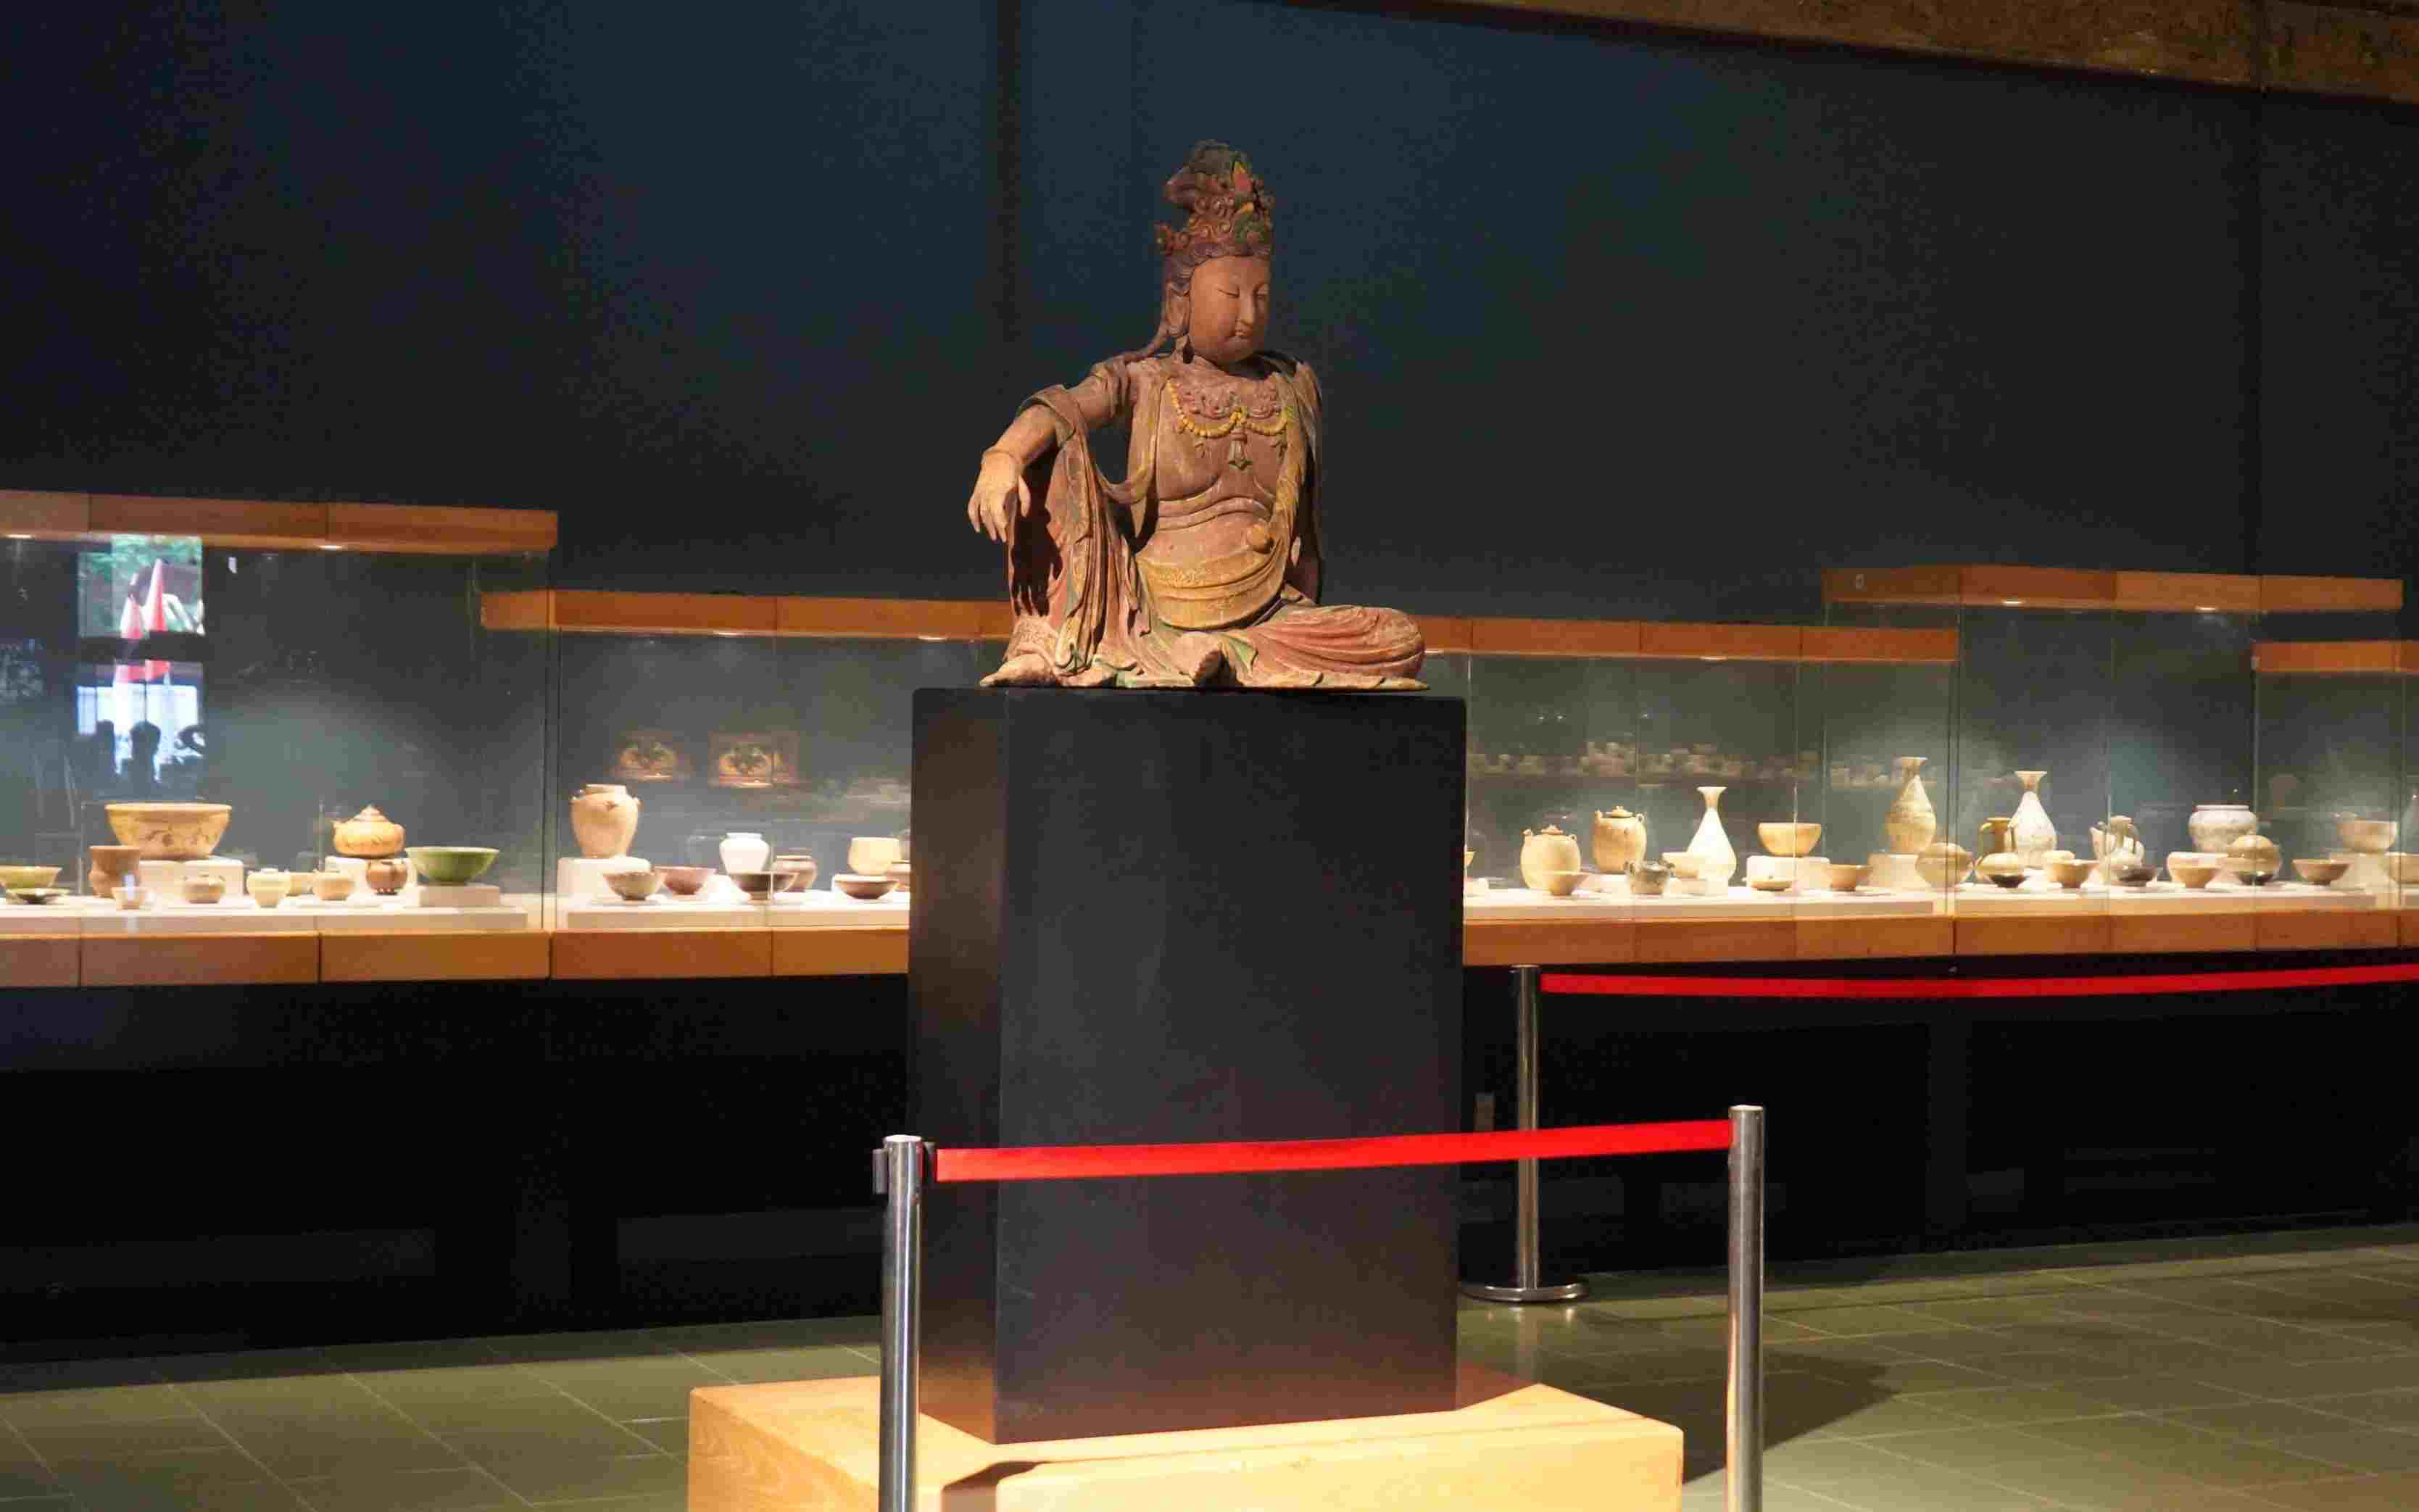 Tượng Phật làm bằng gỗ quý ngọc am được tạo tác chuẩn mực theo tư tưởng và dụng thức Phật giáo Đại thừa. Tượng tô nhiều màu trên lớp thấp vàng mang phong cách nghệ thuật Trung Hoa giai đoạn thế kỉ 17 – 19 có giá trị cao cả nghệ thuật và văn hoá tâm linh.